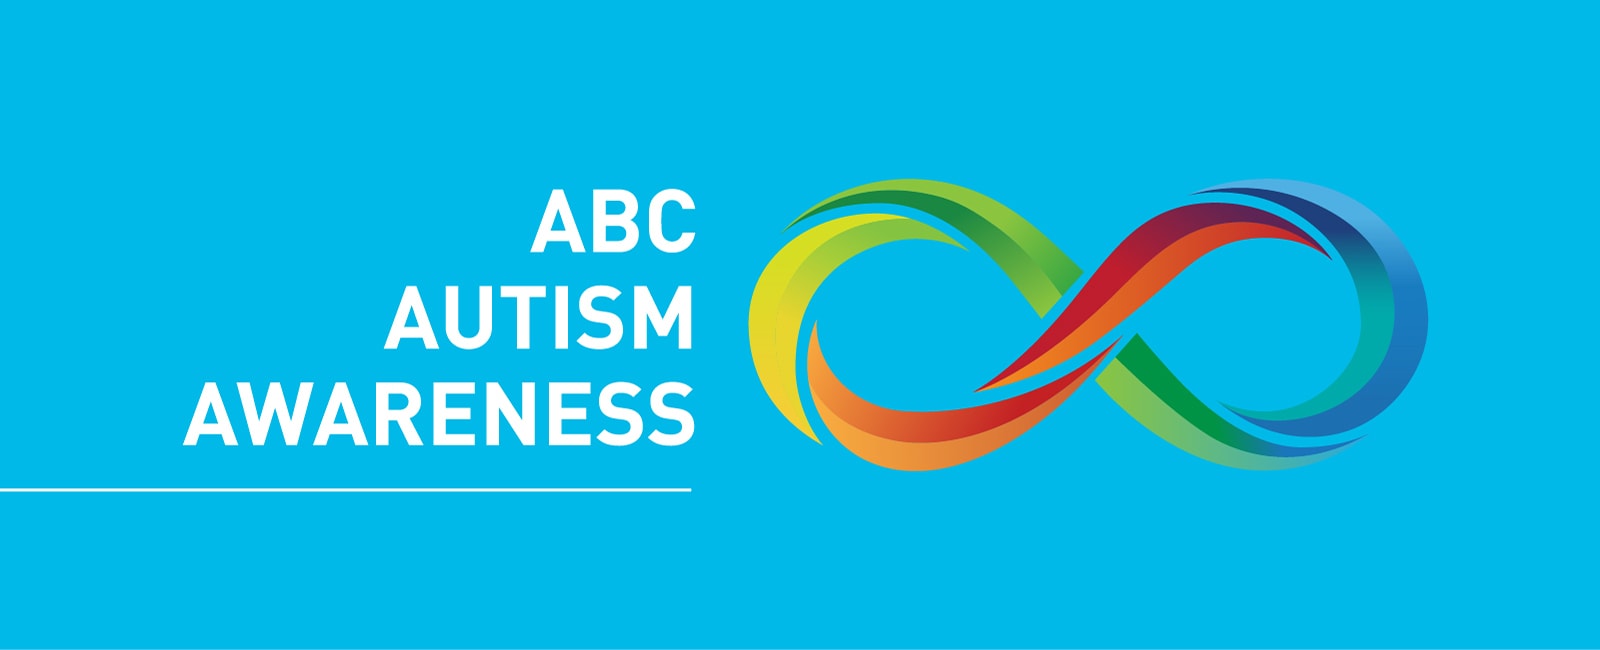 ABC Autism Awareness